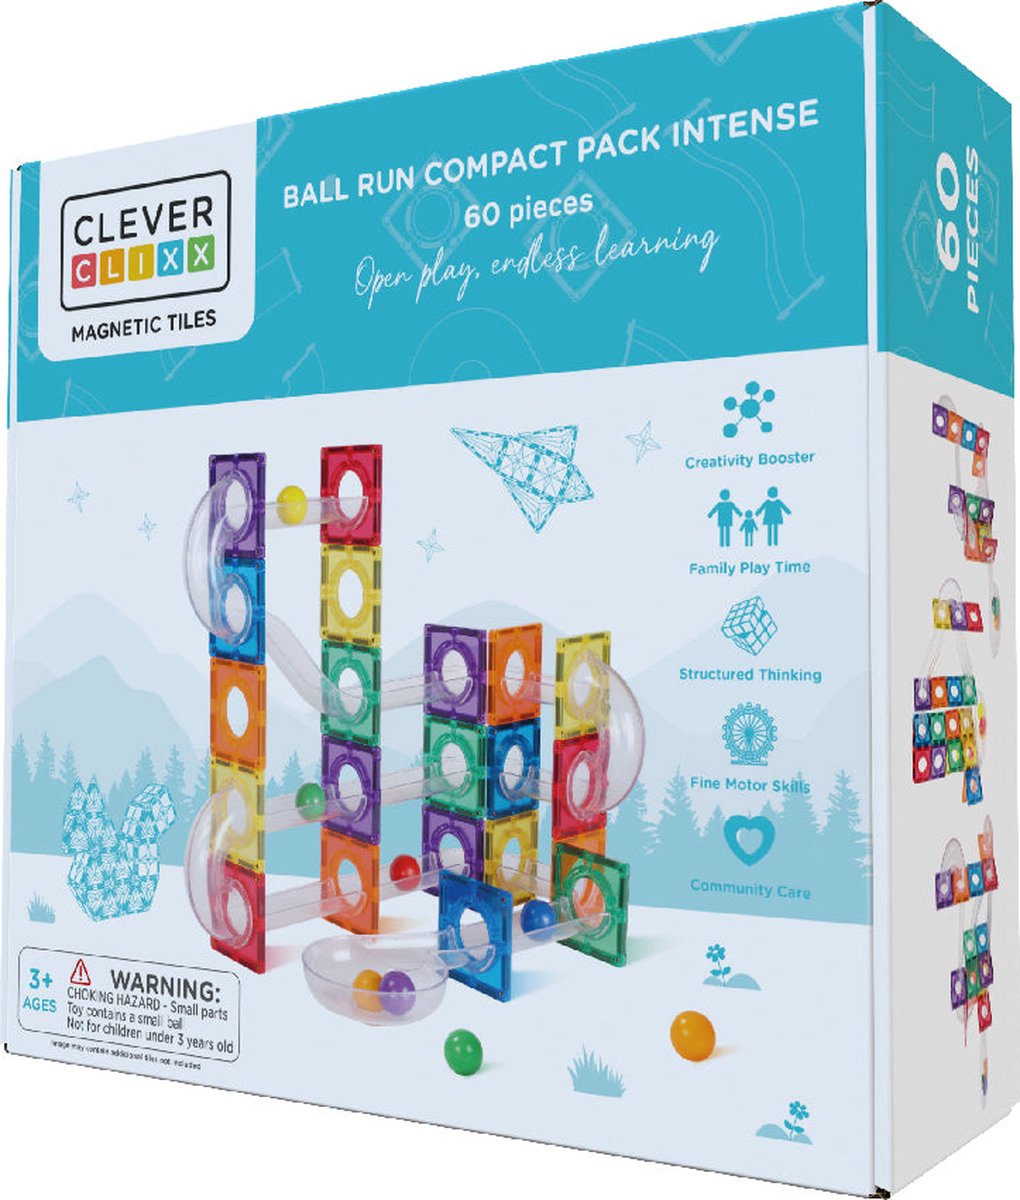 Cleverclixx Ball Run Compact Pack Intense | 60 Stuks